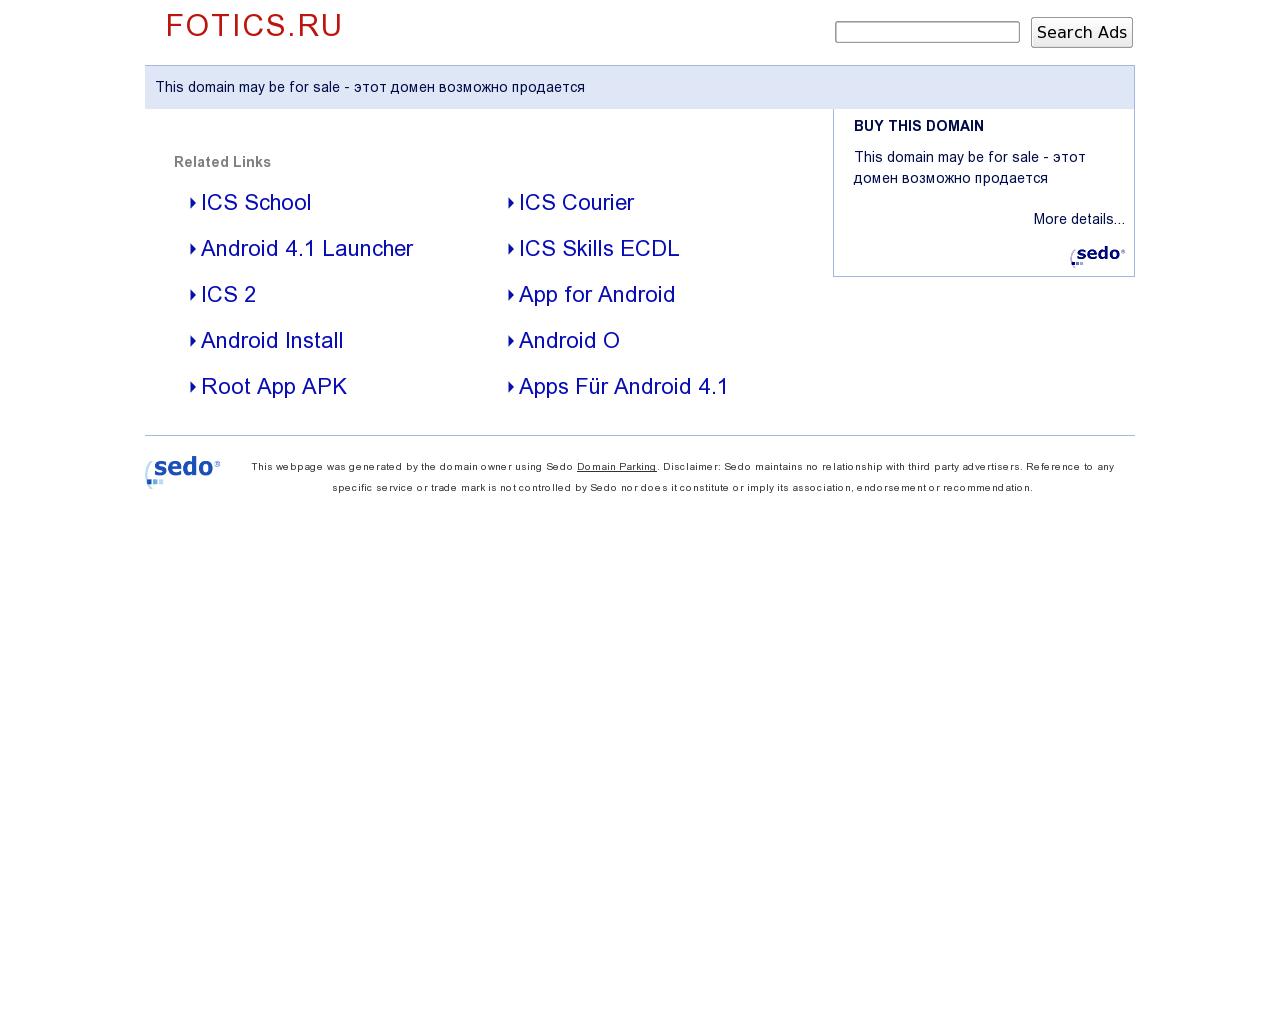 Изображение сайта fotics.ru в разрешении 1280x1024